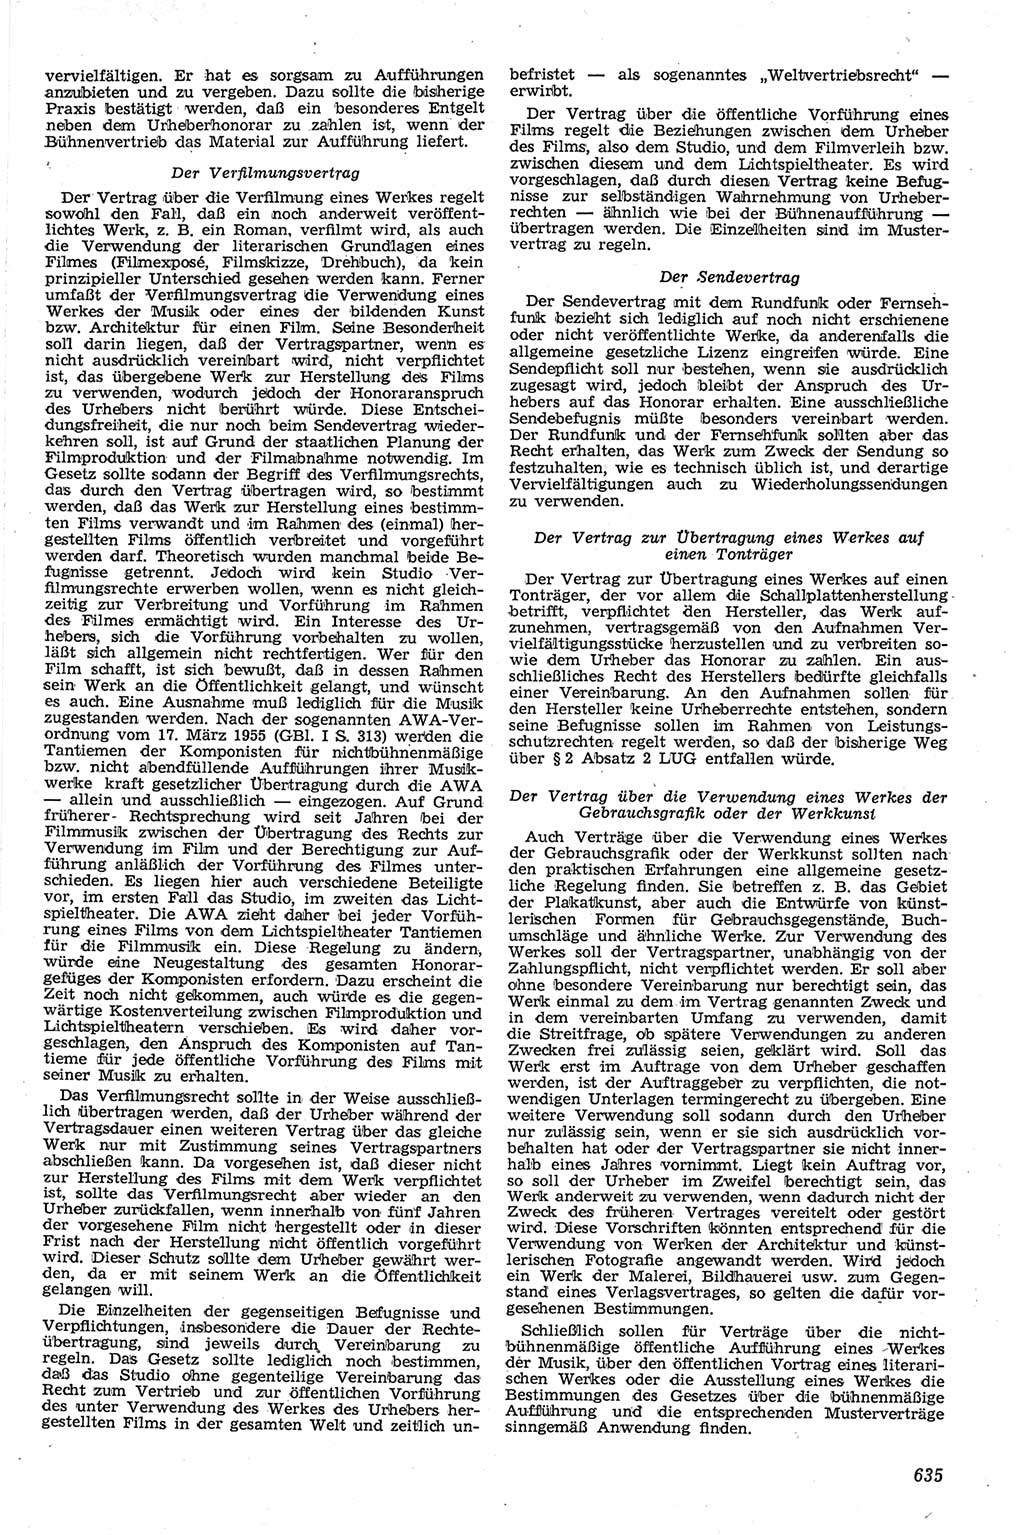 Neue Justiz (NJ), Zeitschrift für Recht und Rechtswissenschaft [Deutsche Demokratische Republik (DDR)], 13. Jahrgang 1959, Seite 635 (NJ DDR 1959, S. 635)